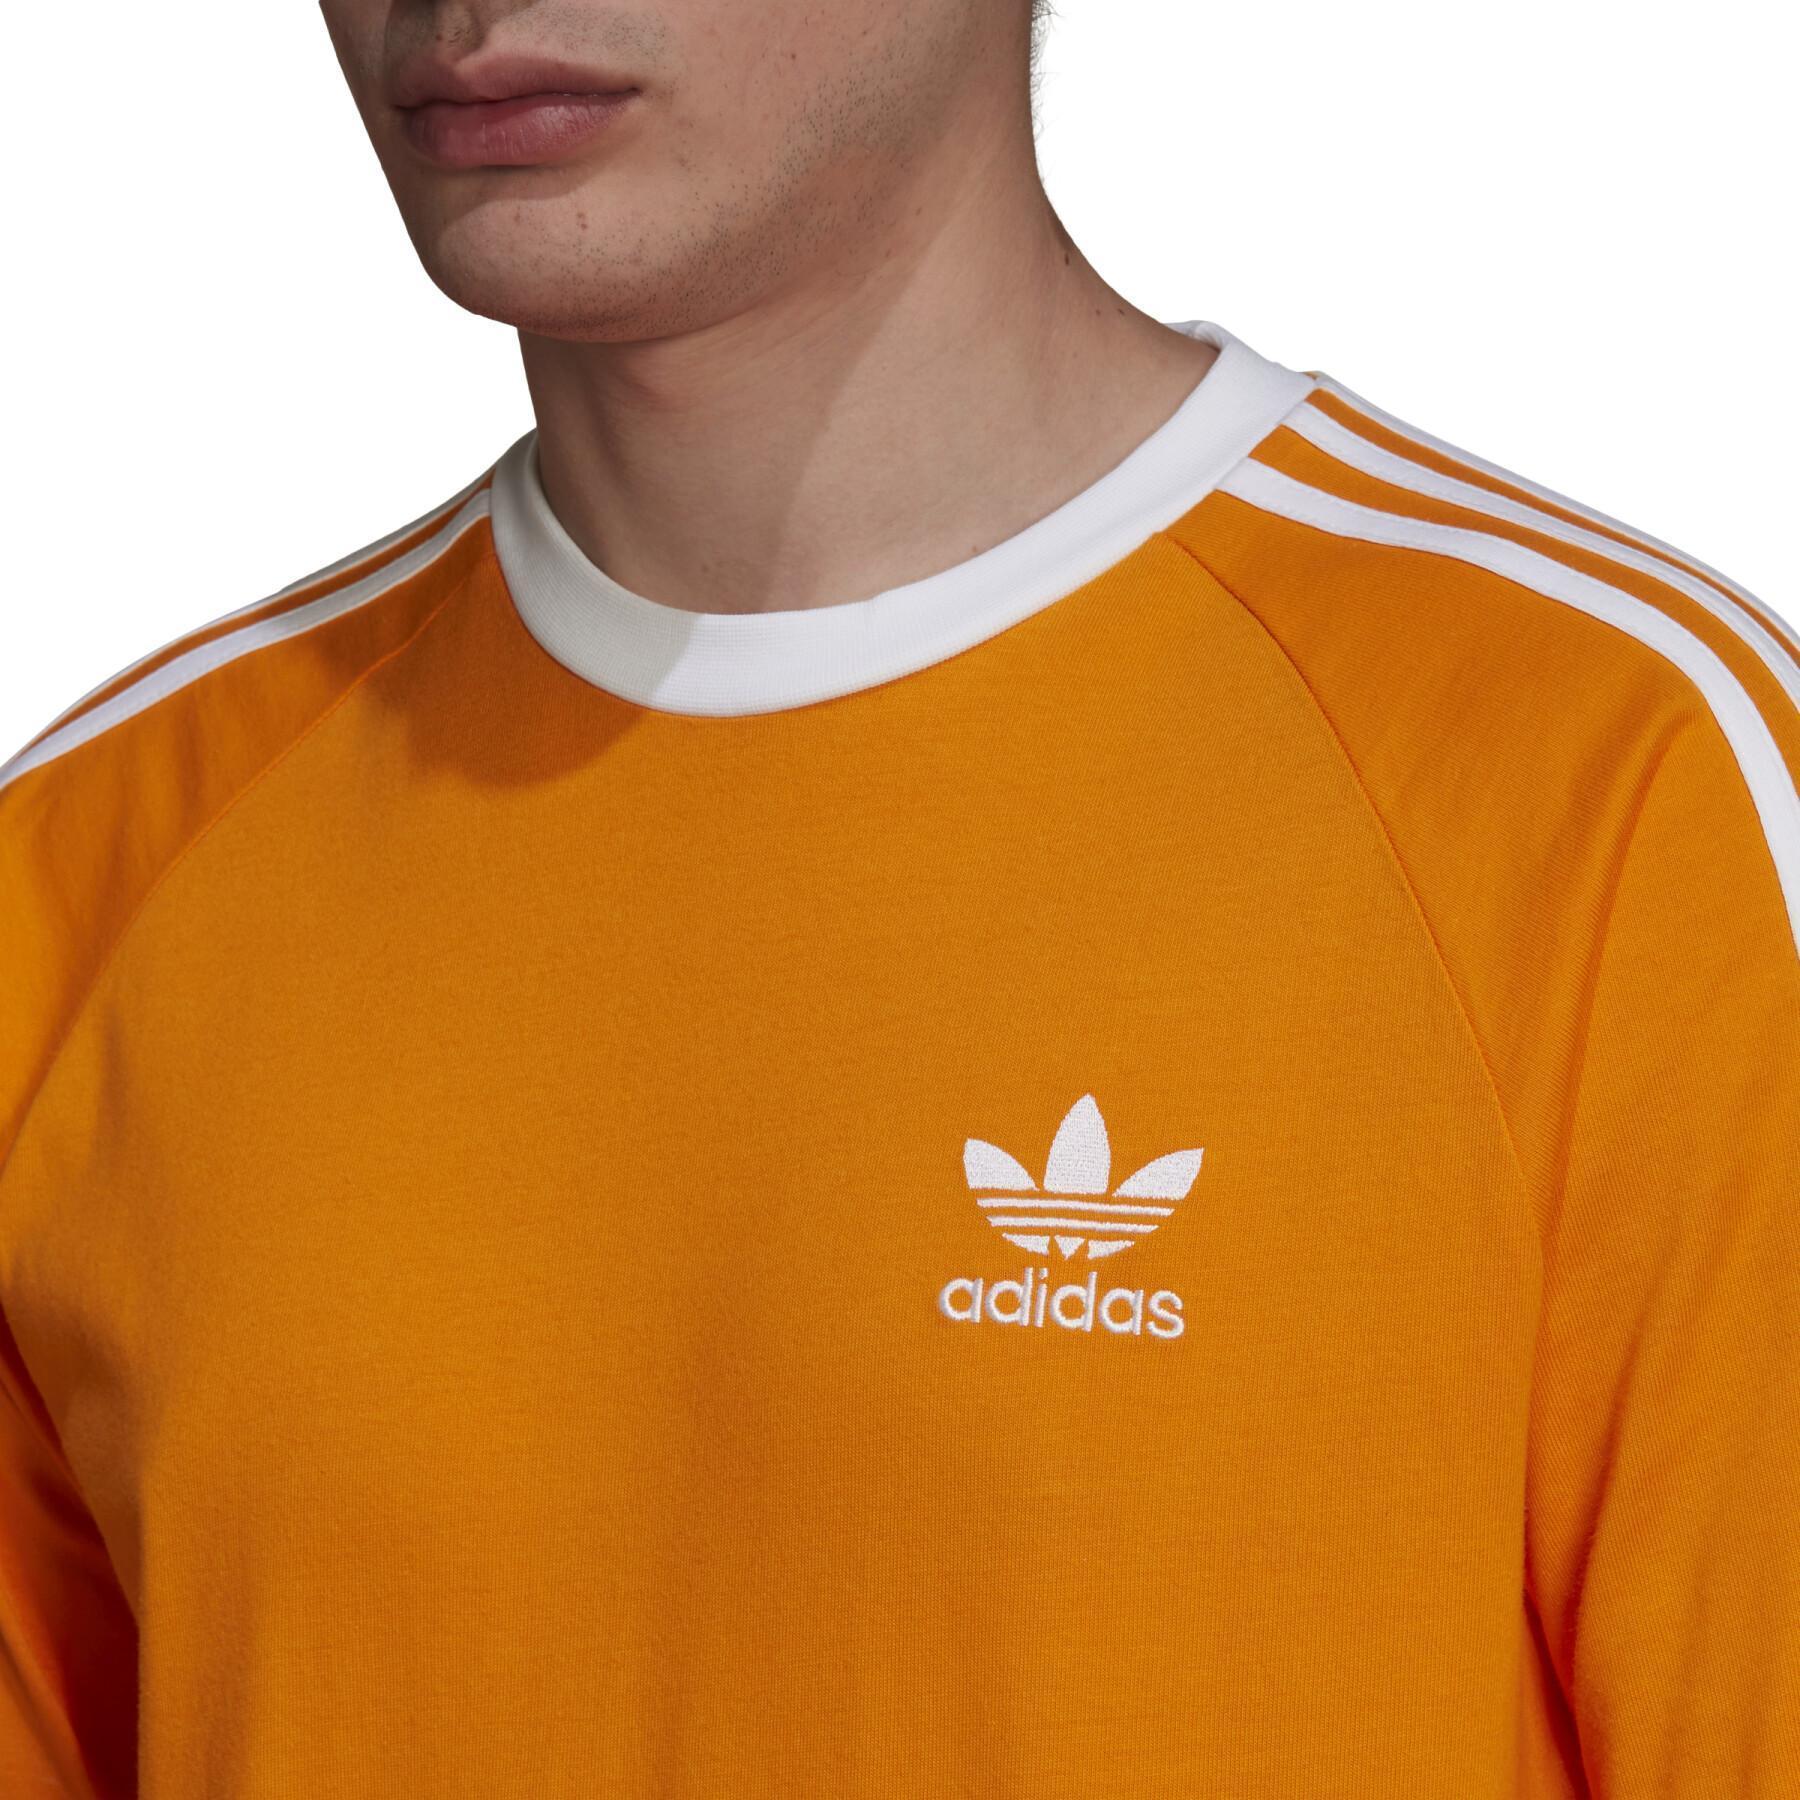 Langarmshirt mit 3 Streifen adidas Originals Adicolor Classics